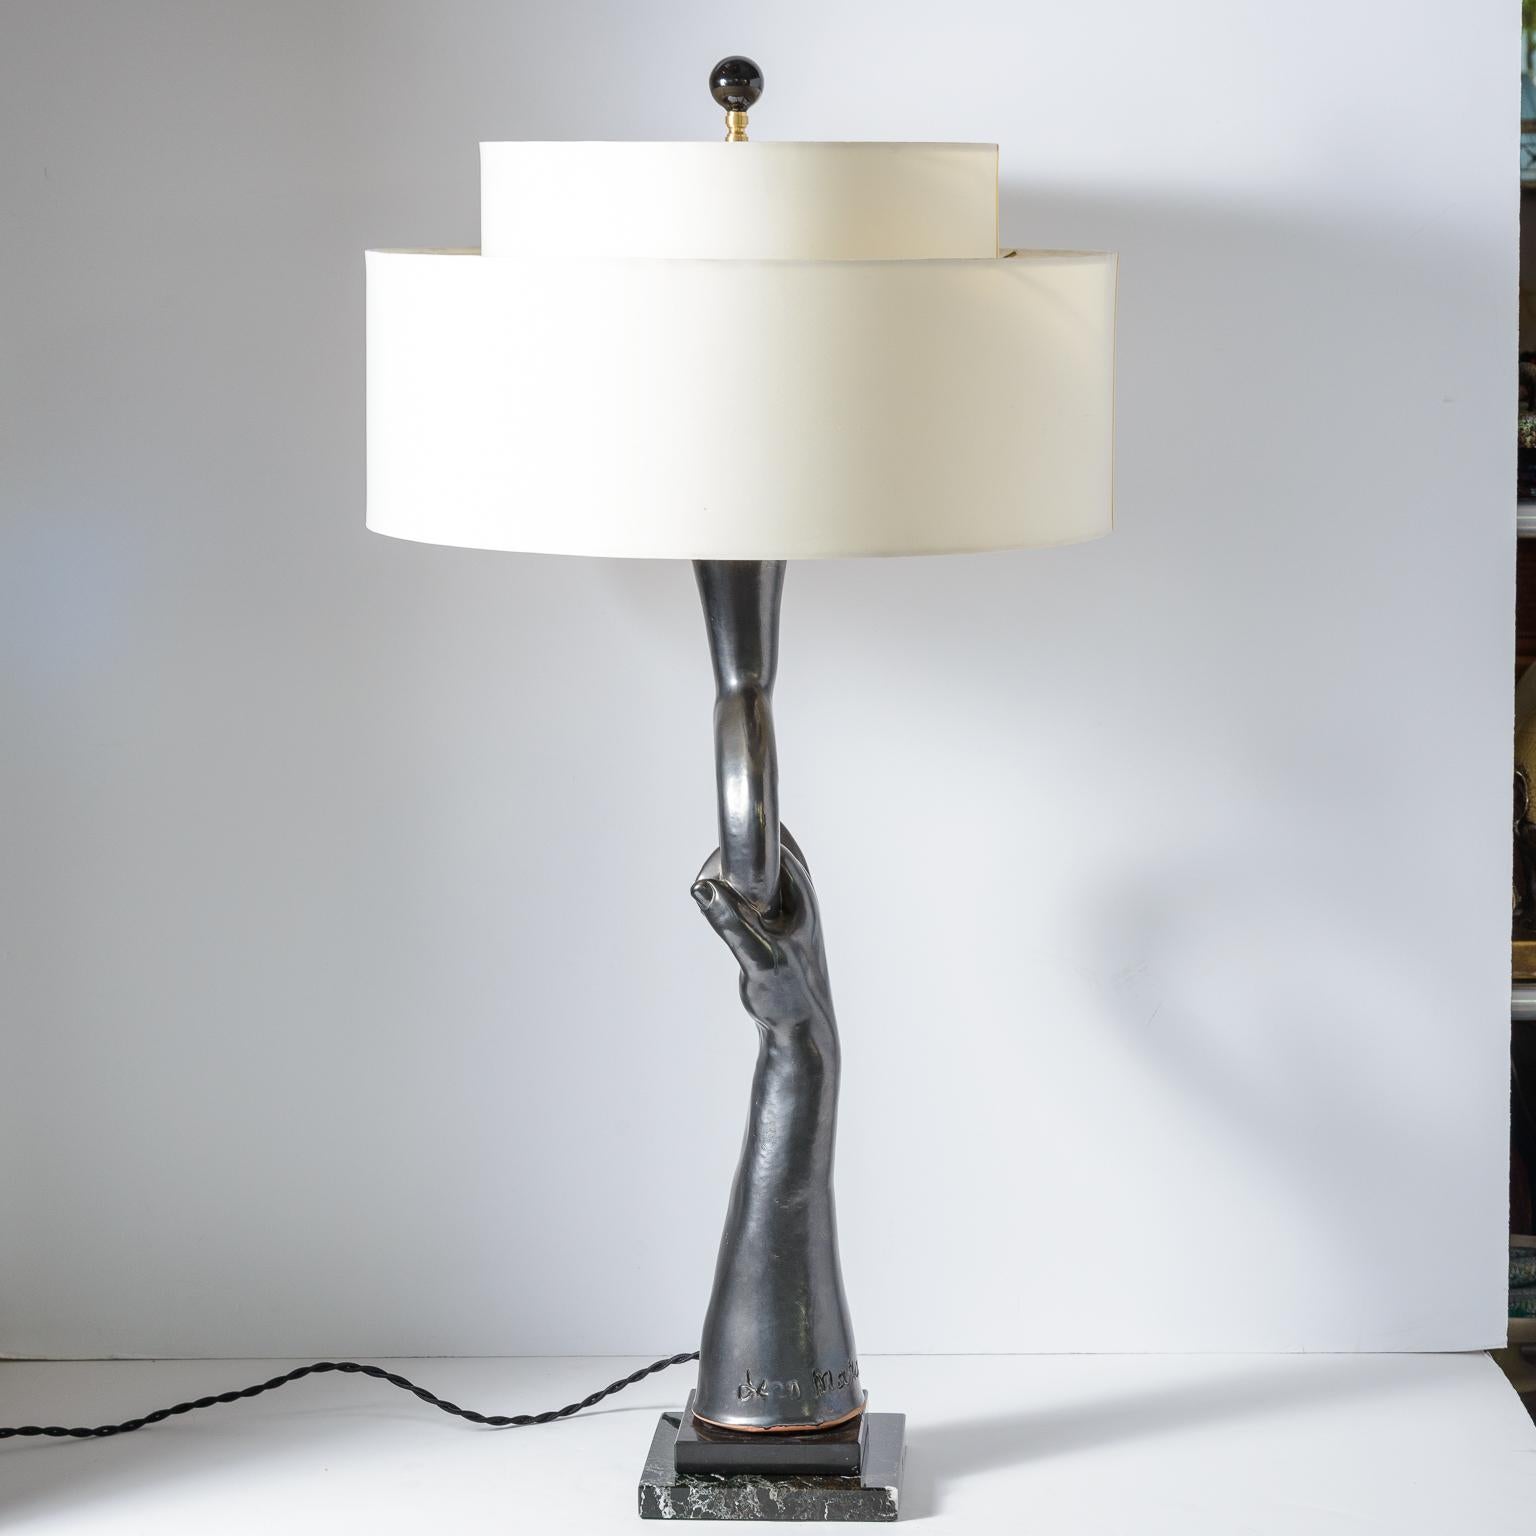 
Cette lampe de table sculptée à la main est  finition noire lustrée en terre cuite  de Jean Marais,
(1918-1998)
Jean Marais est connu comme acteur français et compagnon de Jean Cocteau.
Il était aussi sculpteur et céramiste, et le slam est